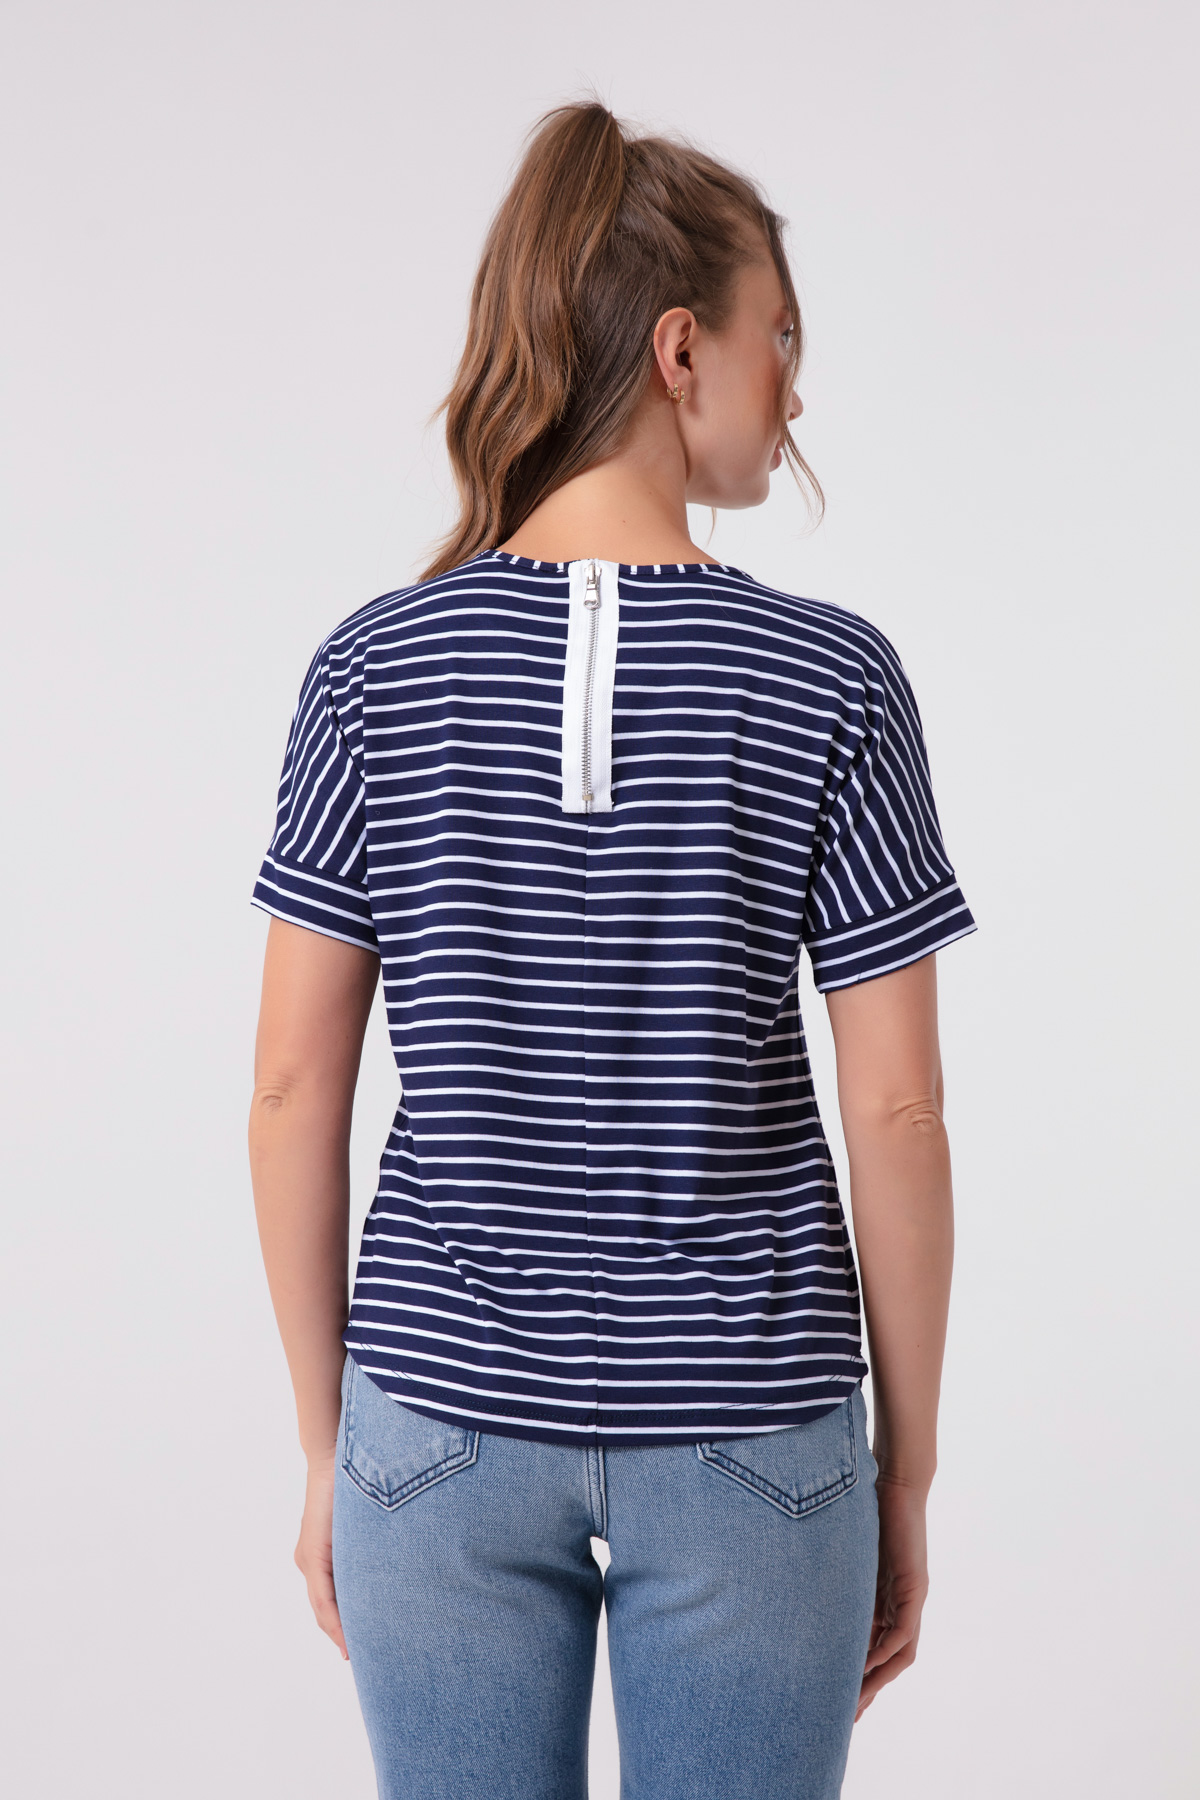 Women's Navy Blue Sequin Pocket T-Shirt